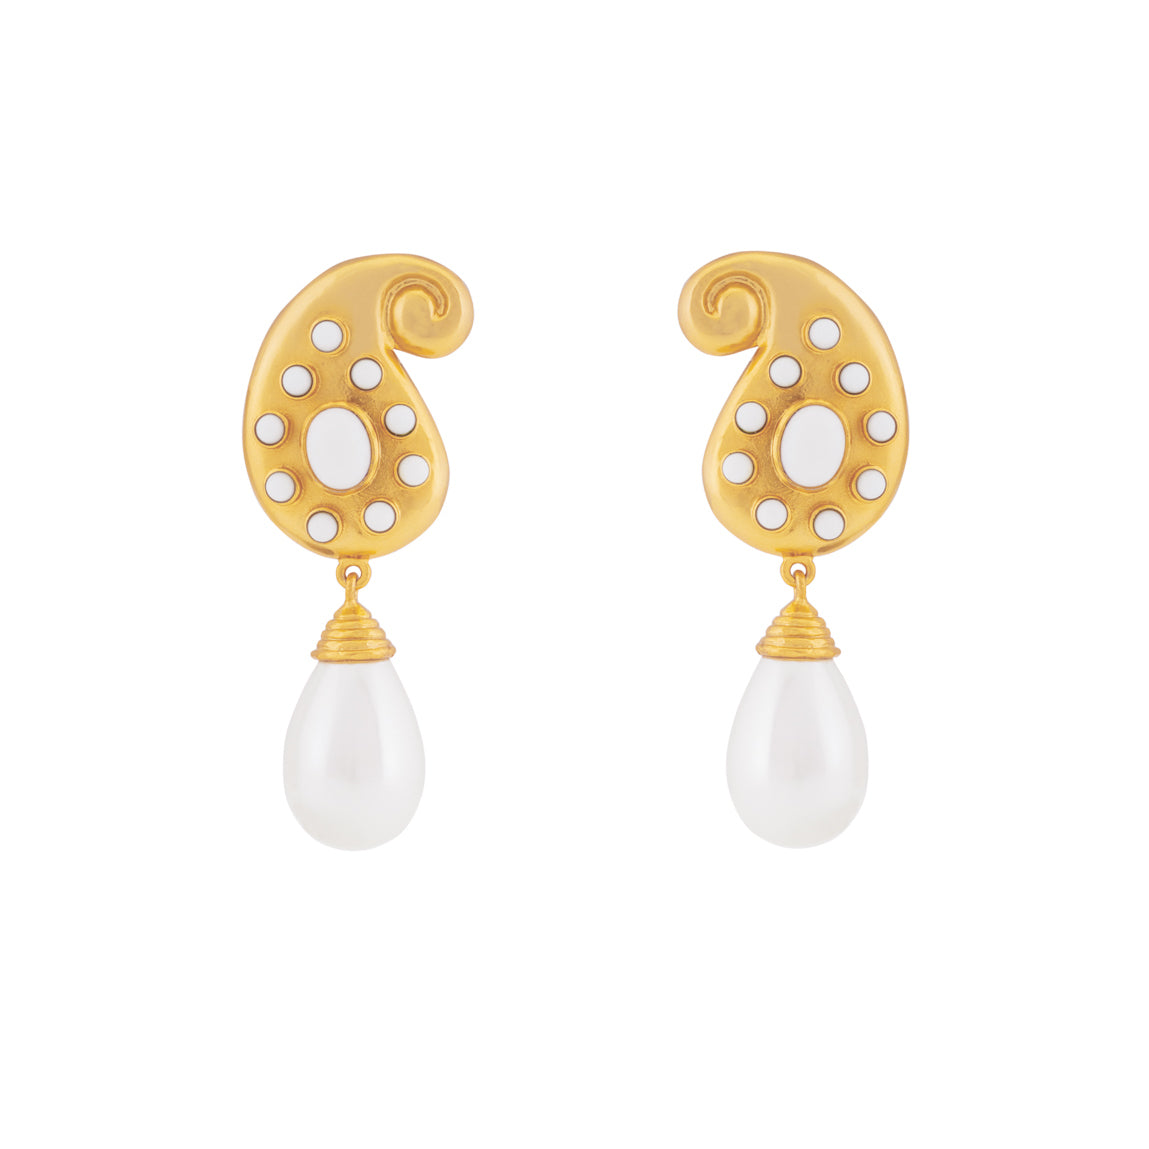 Anya Earrings White Stone & Pearl